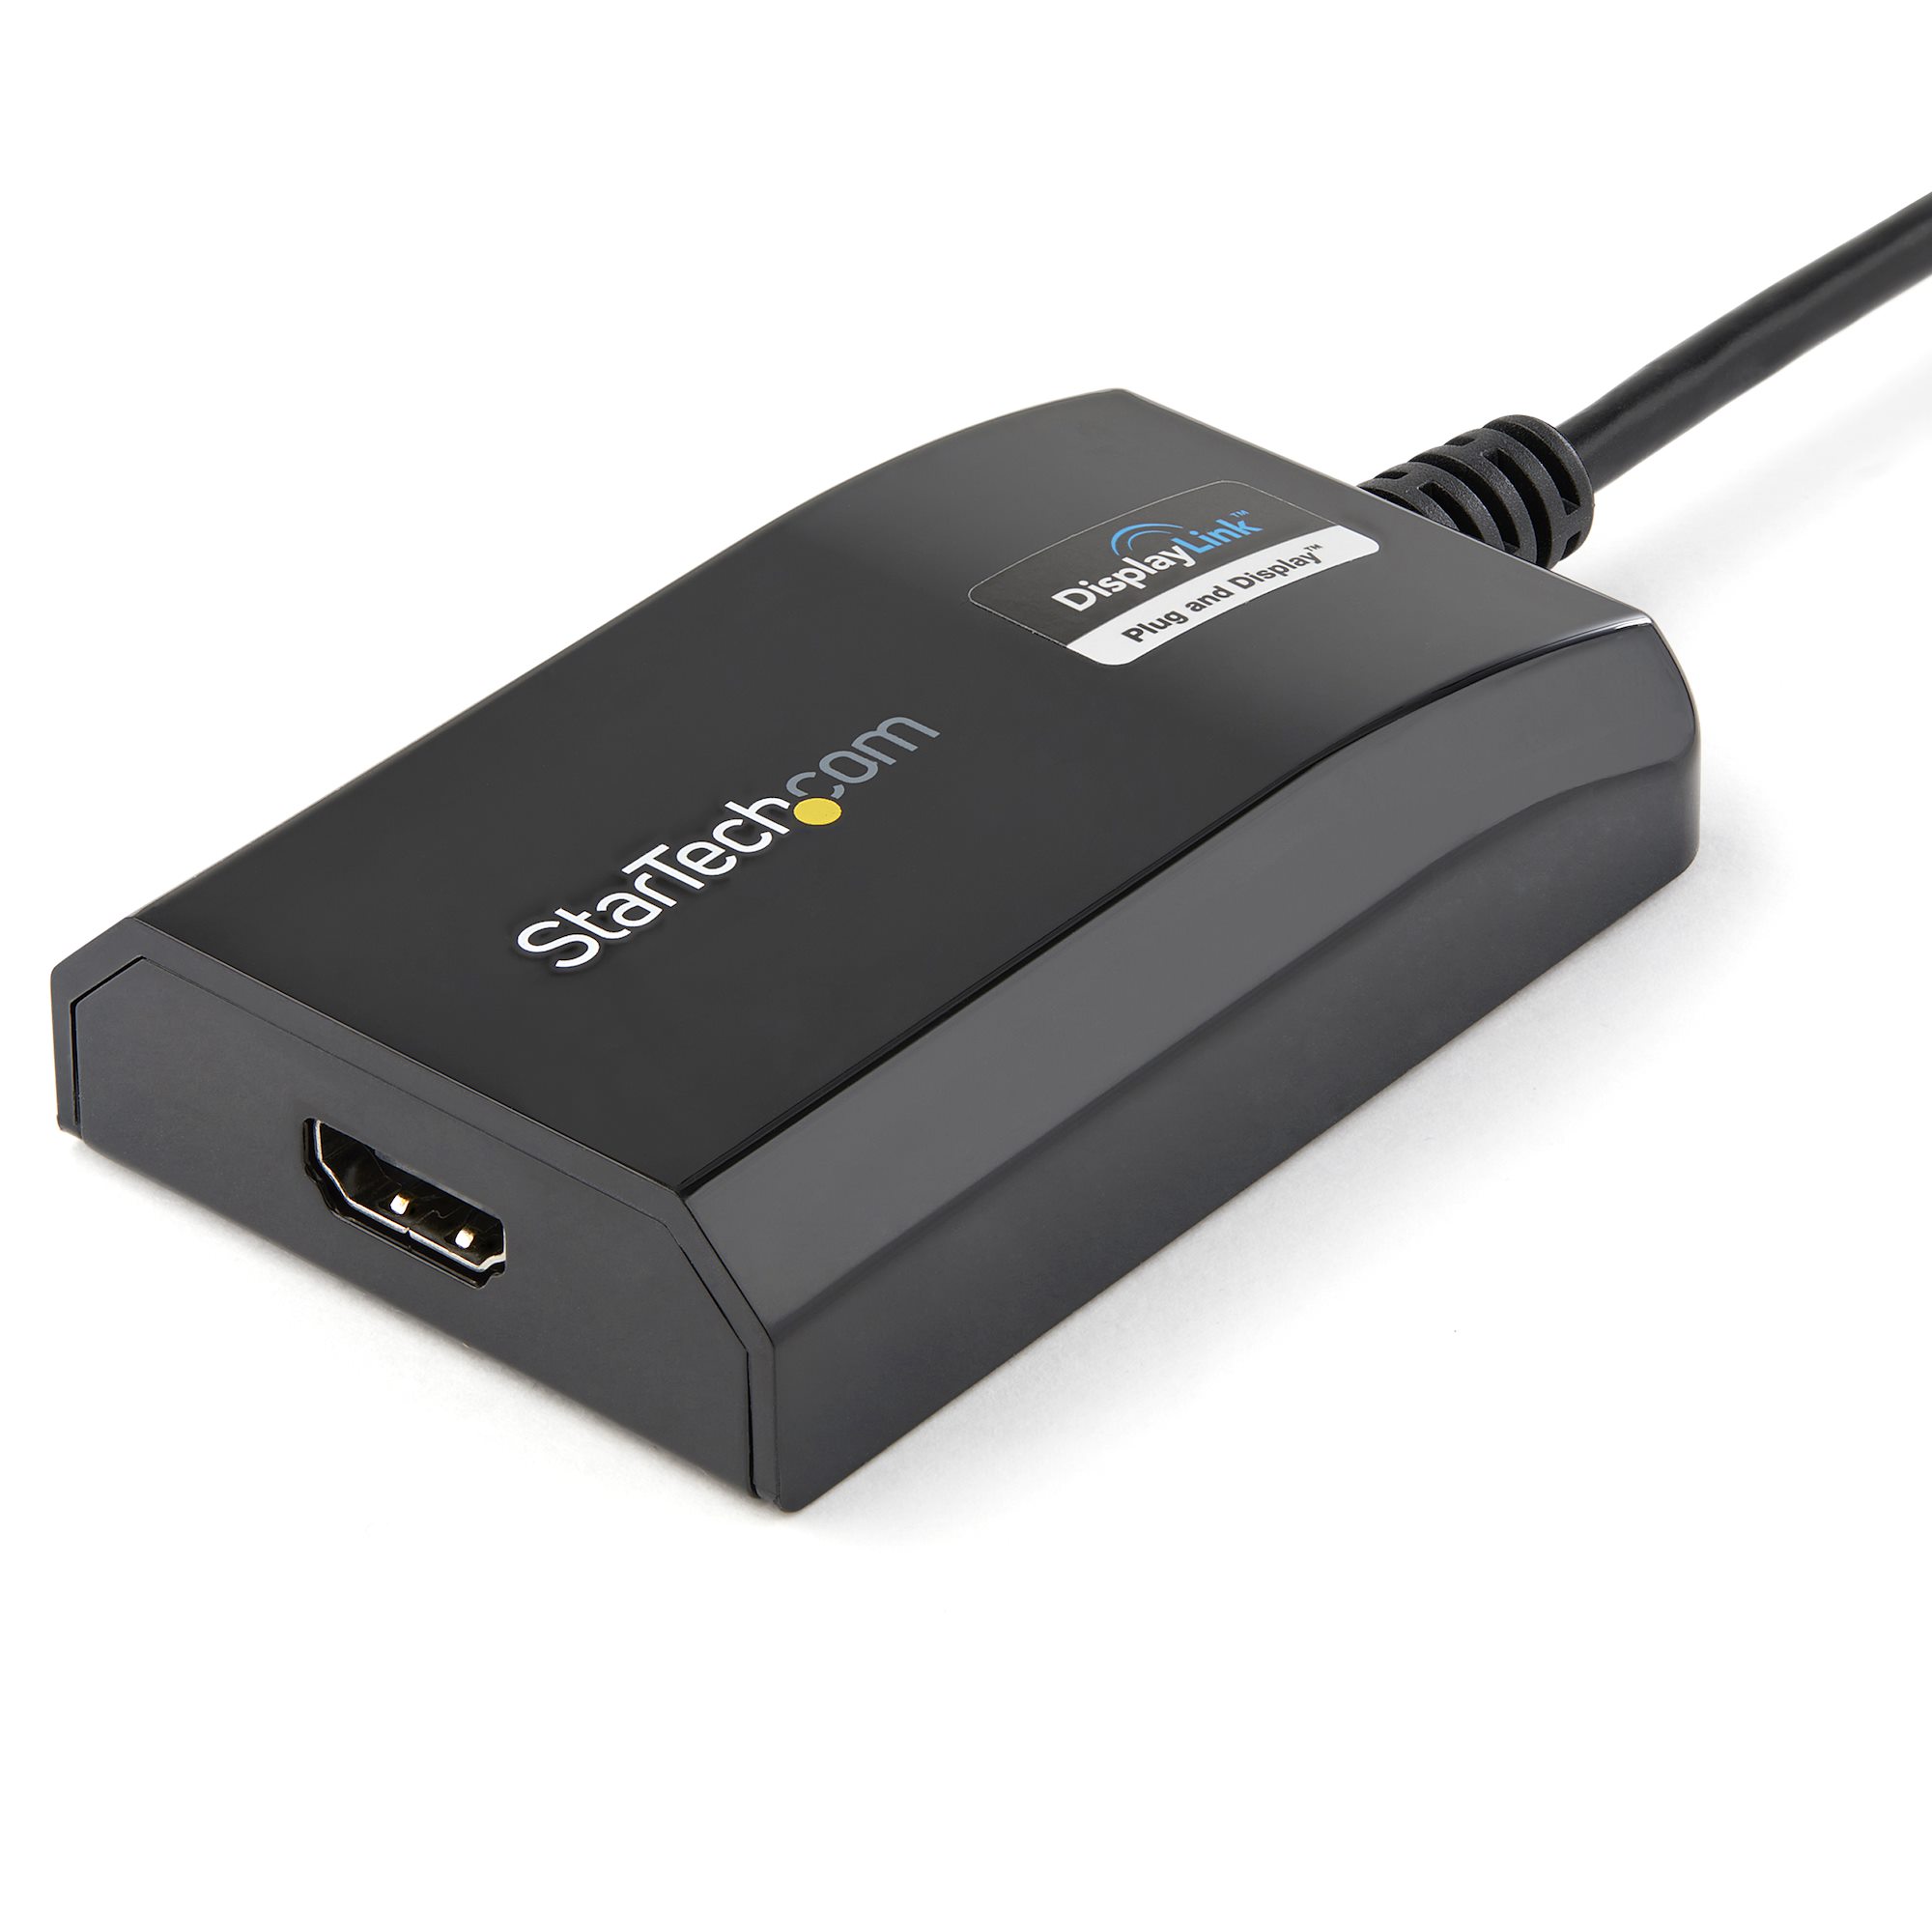 StarTech.com Adaptateur USB 3.0 vers HDMI - 1x 4K 30Hz & 1x 1080p - Carte  vidéo et graphique externe - Adaptateur d'affichage double moniteur USB-A  vers HDMI - Compatible Windows (USB32HD2) 